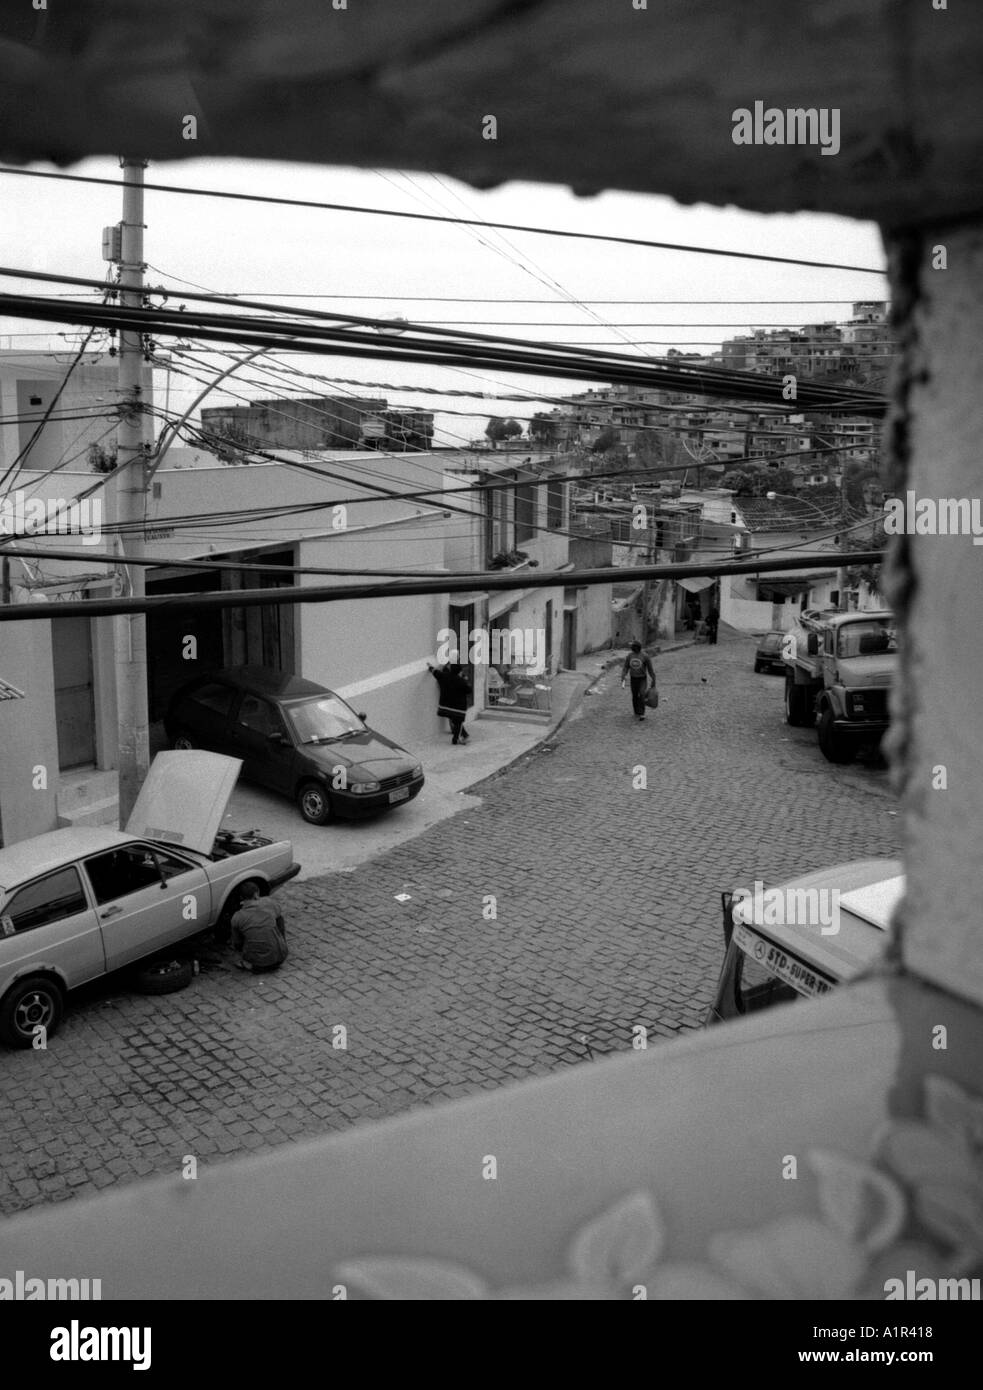 Vue panoramique vue à travers pente favela typique petit carré trou mur Santa Marta Rio de Janeiro Brésil Brasil Amérique Latine du Sud Banque D'Images